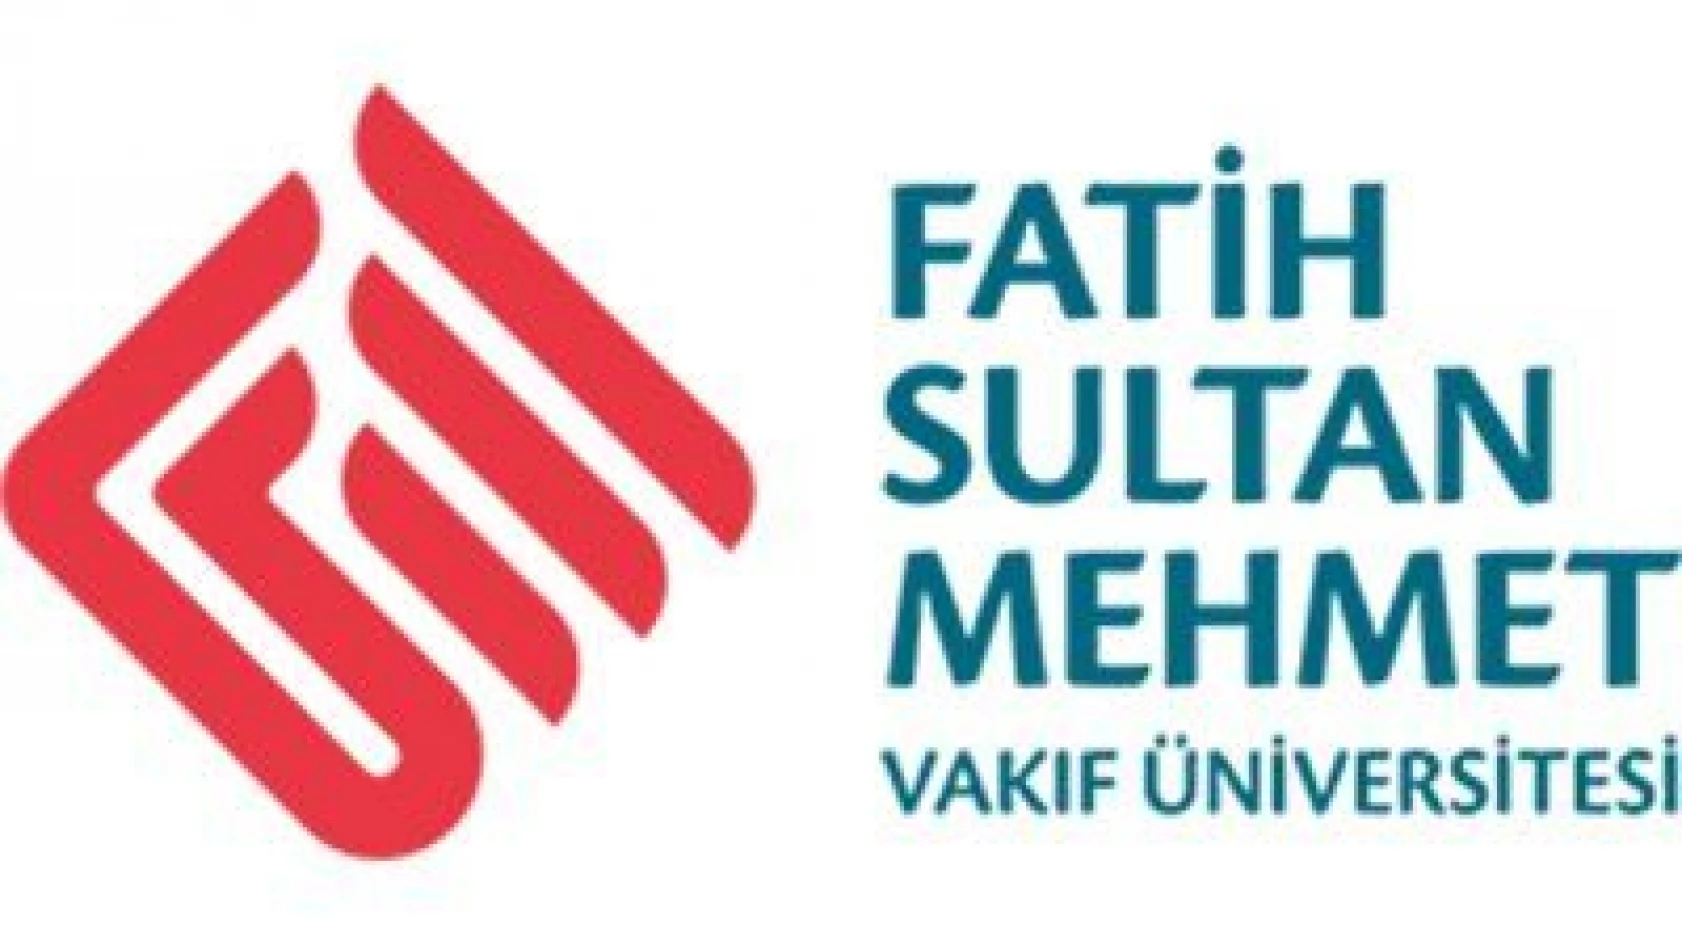 Fatih Sultan Mehmet Vakıf Üniversitesi Öğretim Üyesi alıyor